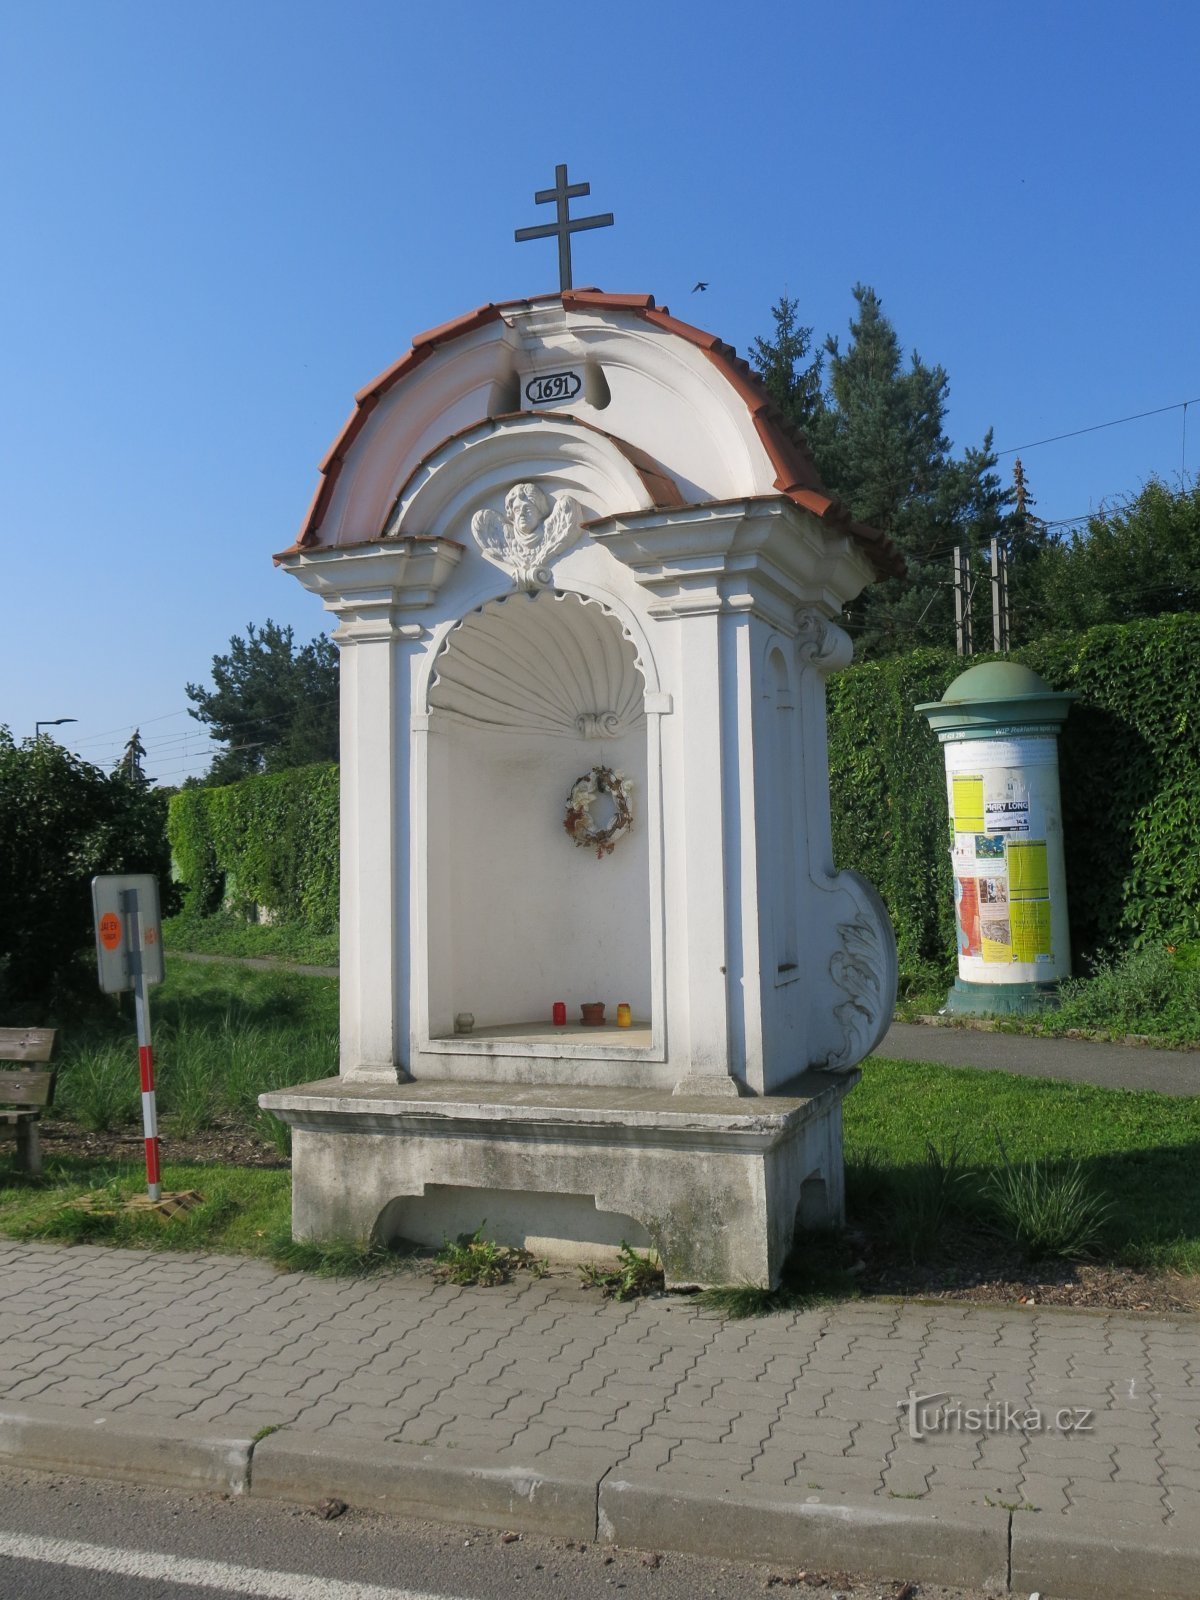 Planá nad Lužnicí - chapel of St. Barbara